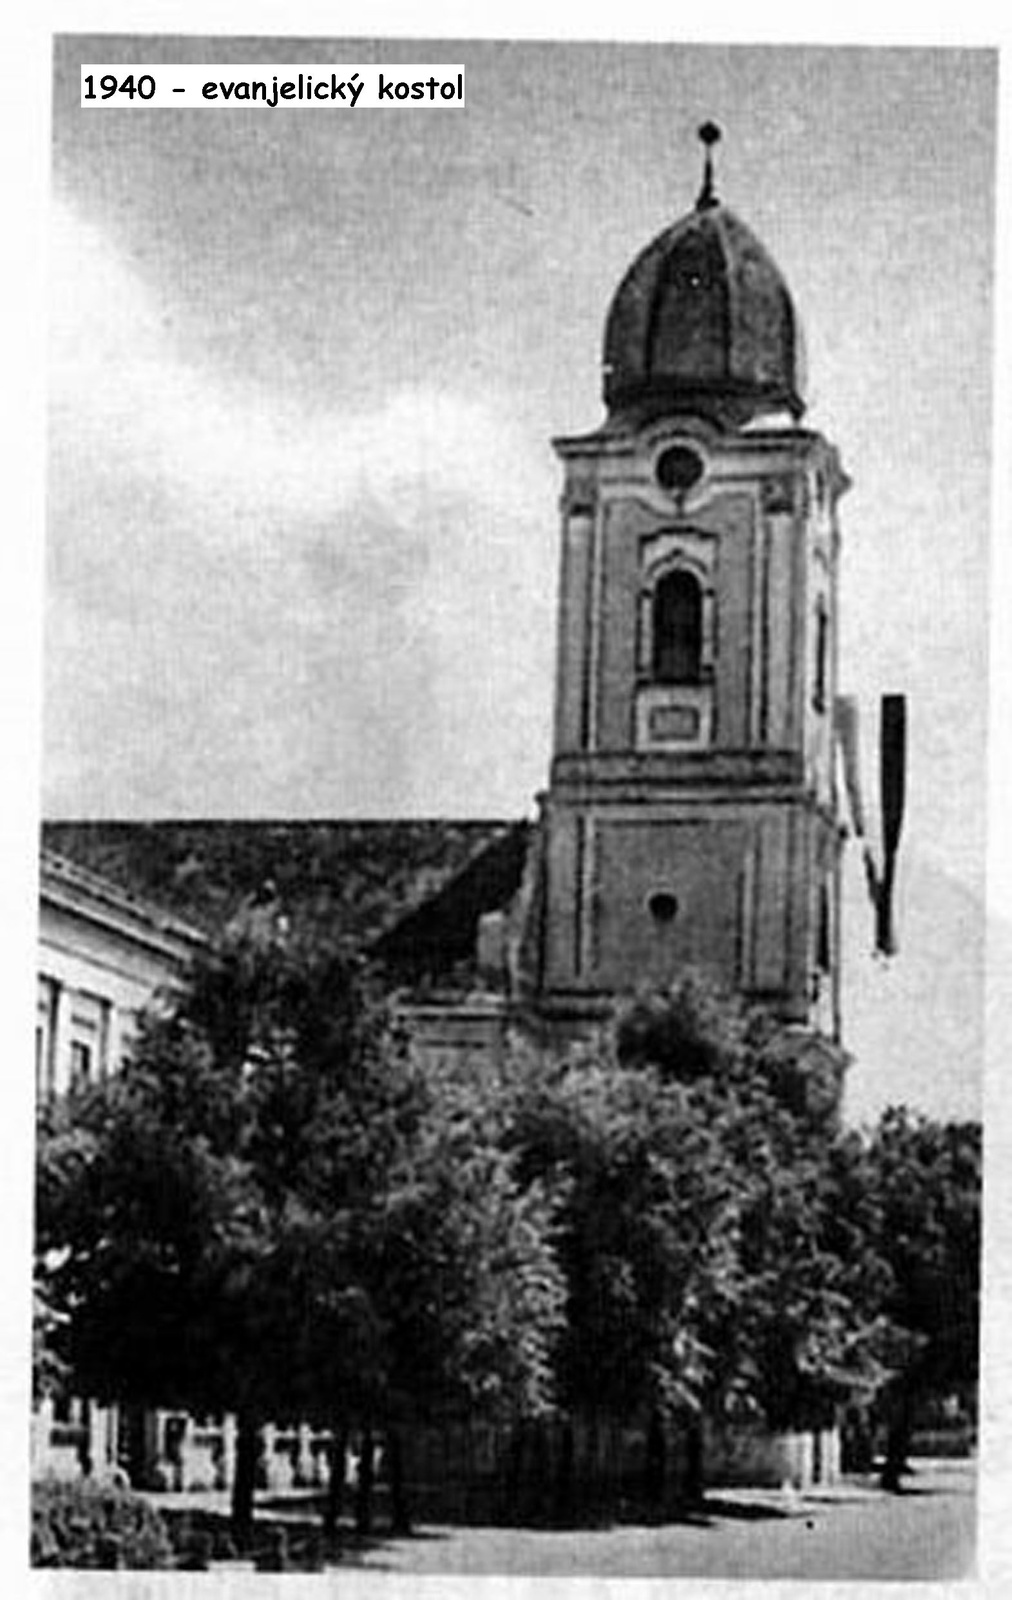 1940 - evanjelický kostol